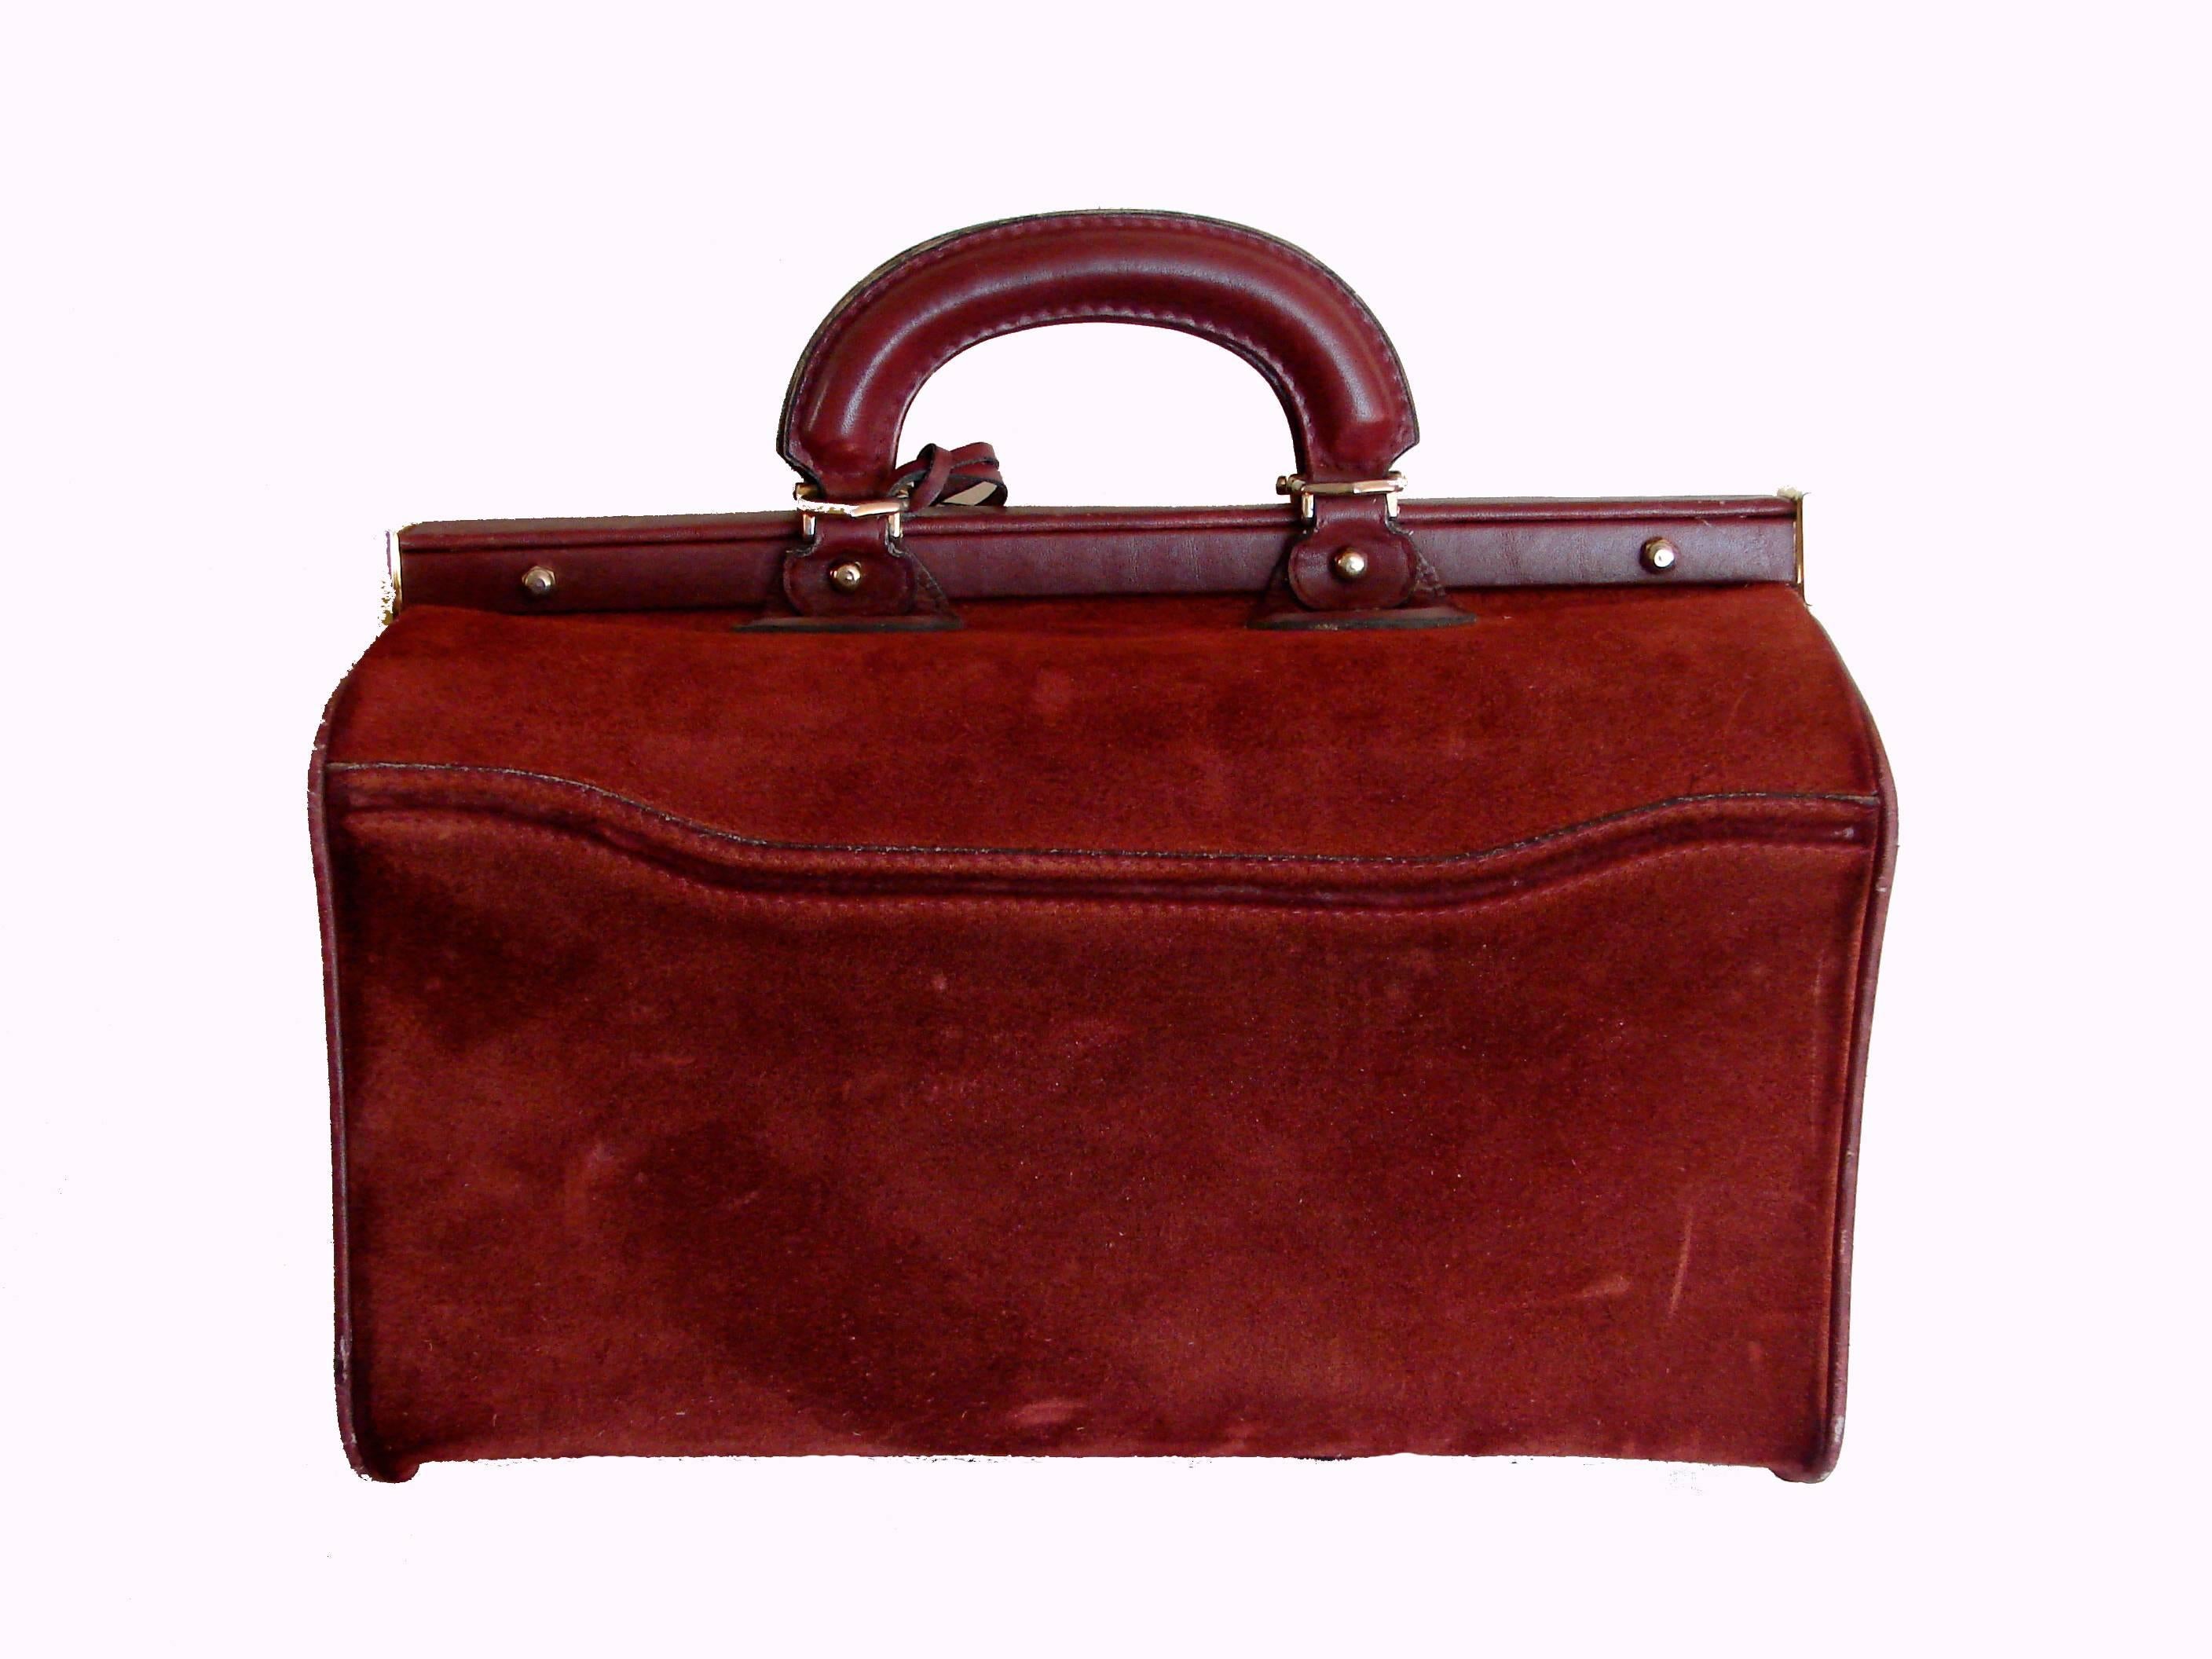 Cartier Large Bordeaux Suede Leather Doctors Bag Train Case 1980s with Dust Bag 1